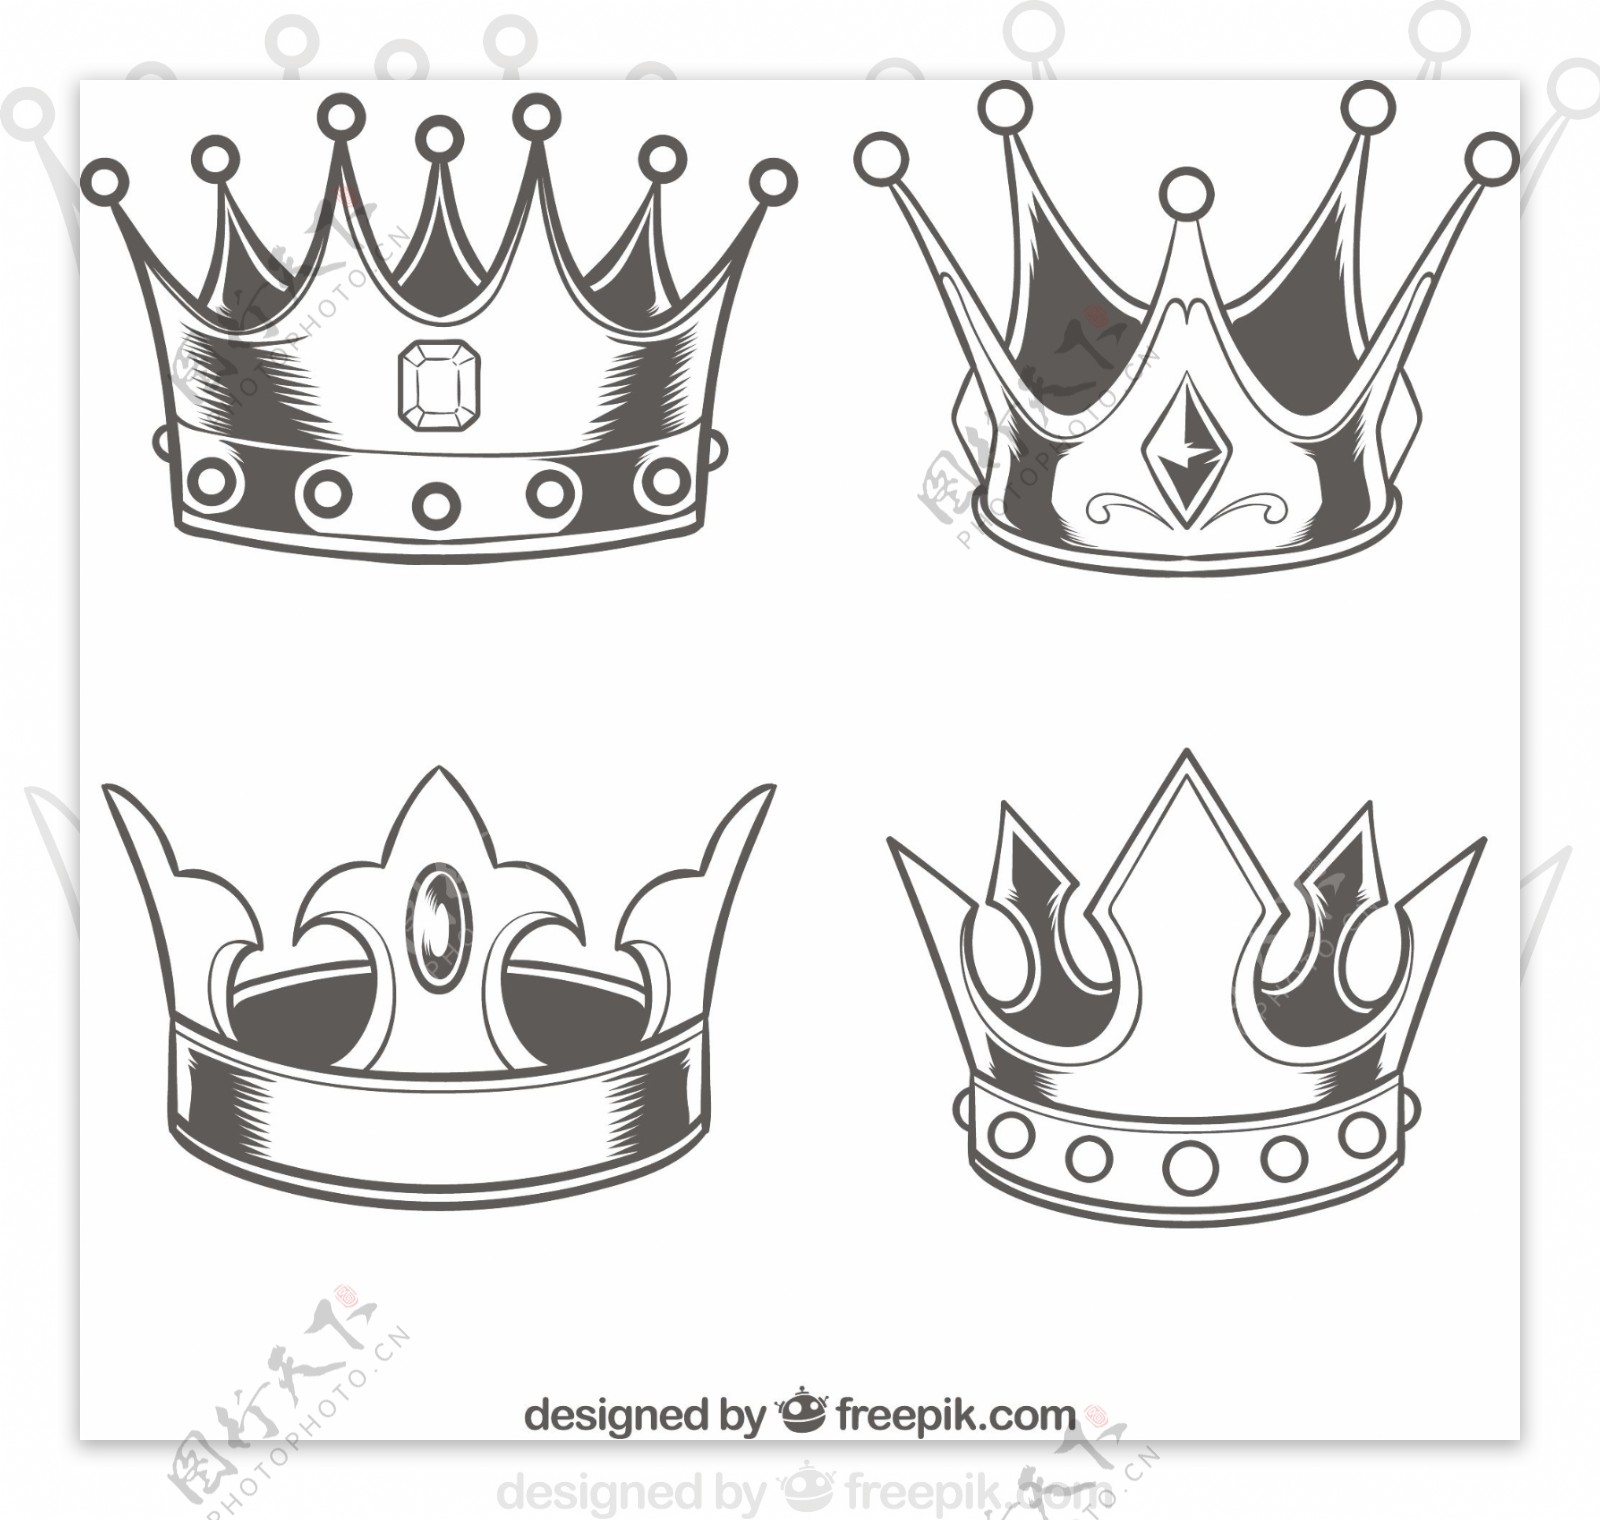 四个写实素描风格皇冠设计素材